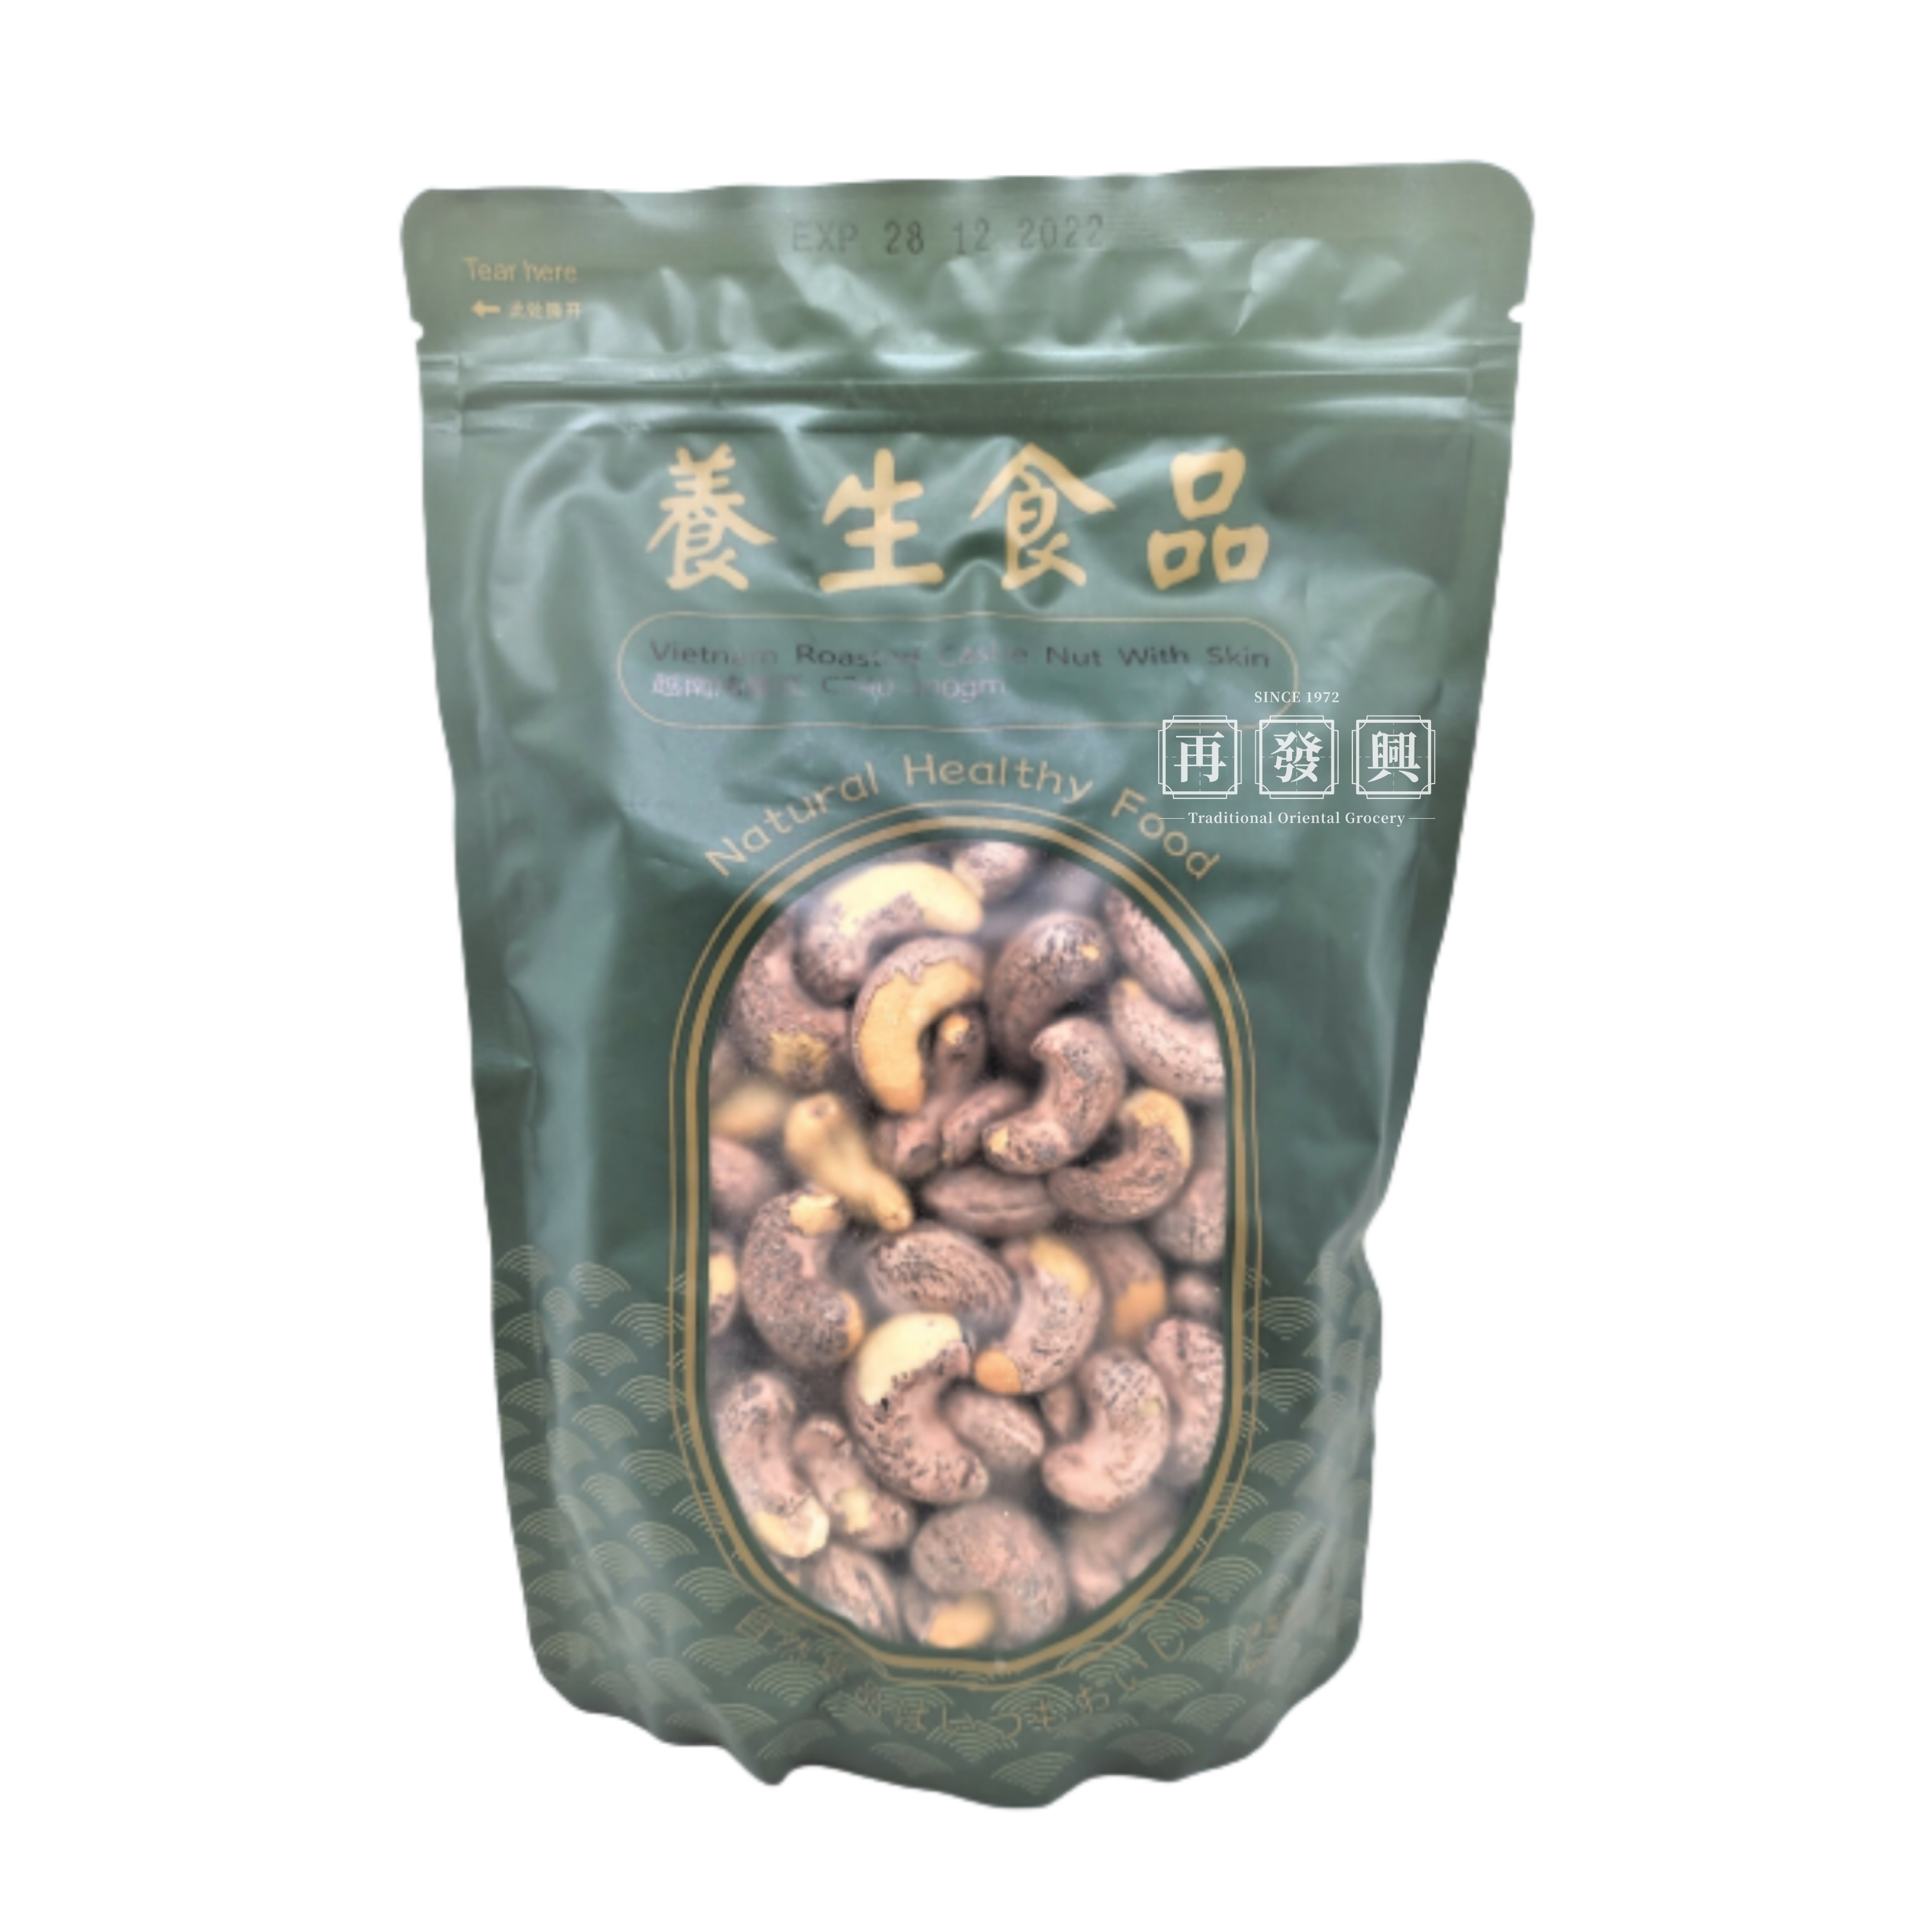 Roasted Vietnam Cashew Nut with Skin CW240 400g